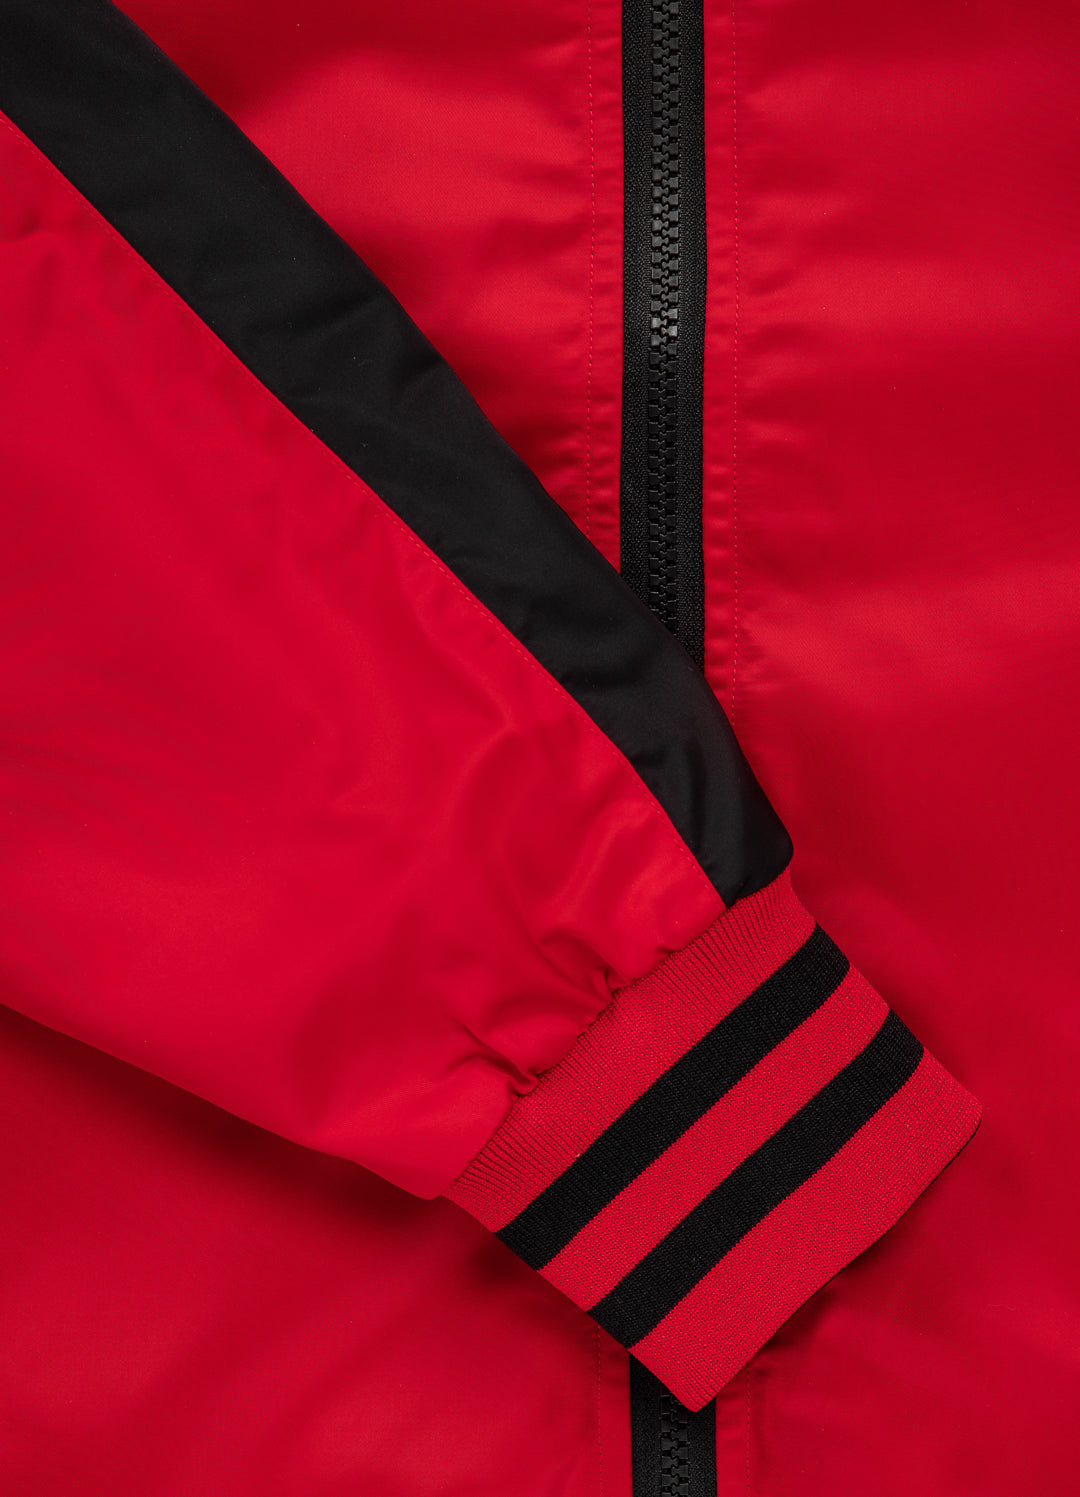 BROADWAY BIG LOGO Red Reversible Jacket.